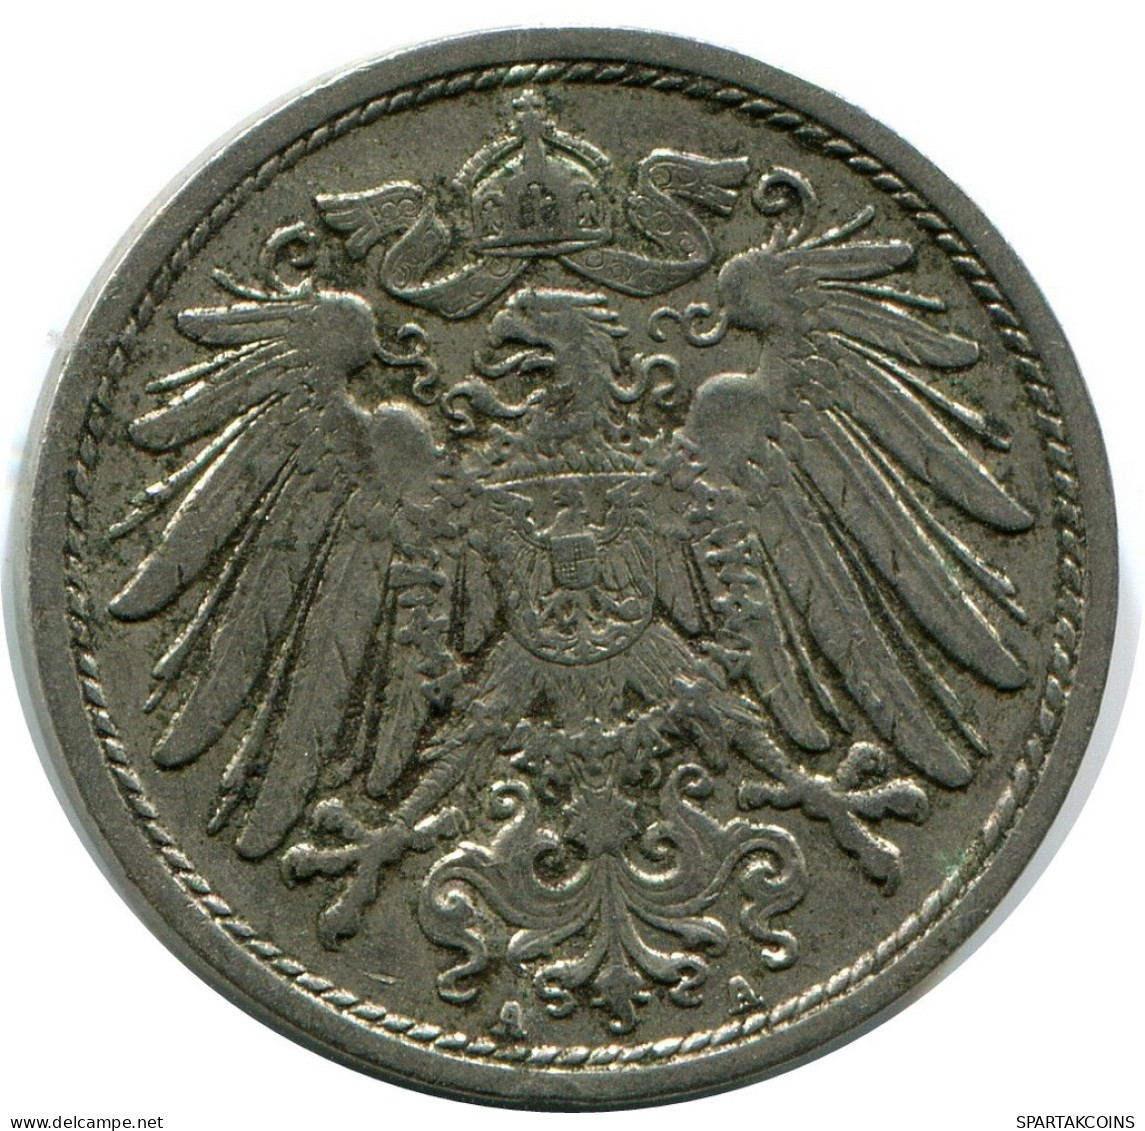 10 PFENNIG 1911 A GERMANY Coin #DB292.U.A - 10 Pfennig